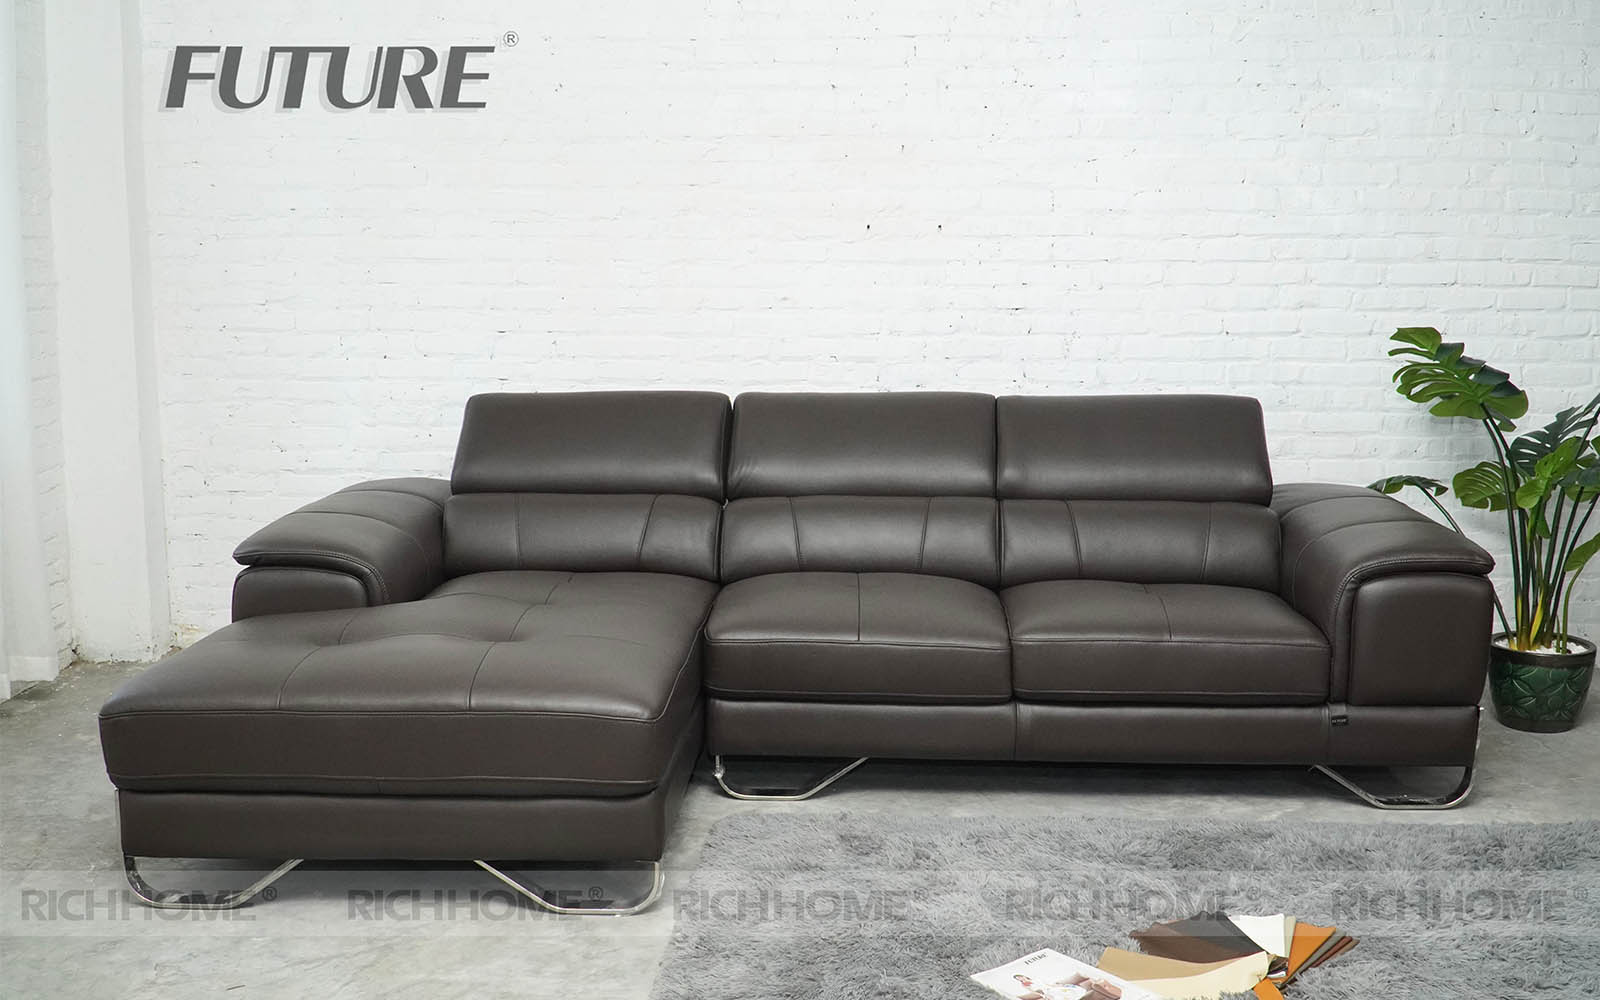 Xem ngay: Các mẫu sofa nhập khẩu đẹp từ Malaysia - Ảnh 5